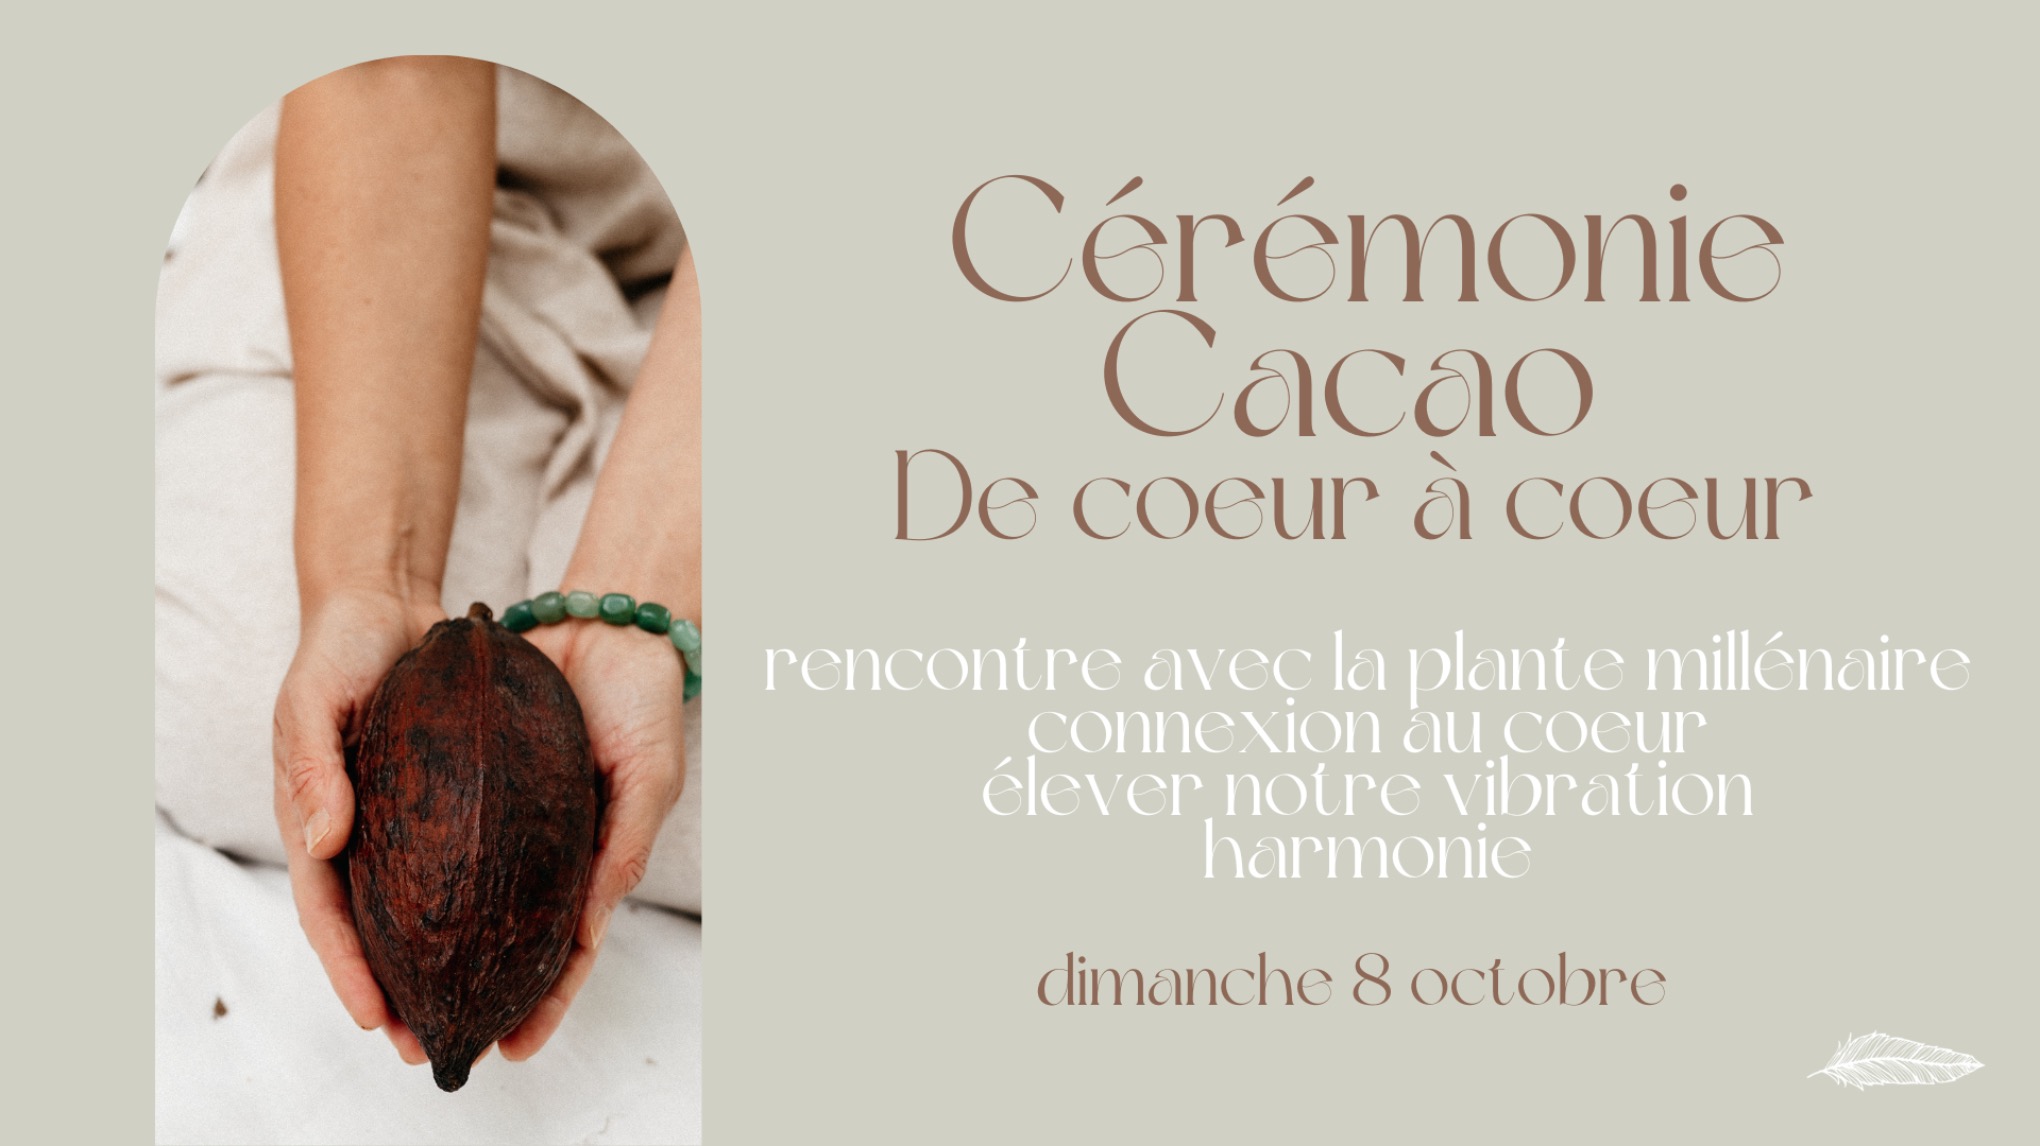 Cérémonie Cacao - De coeur à coeur